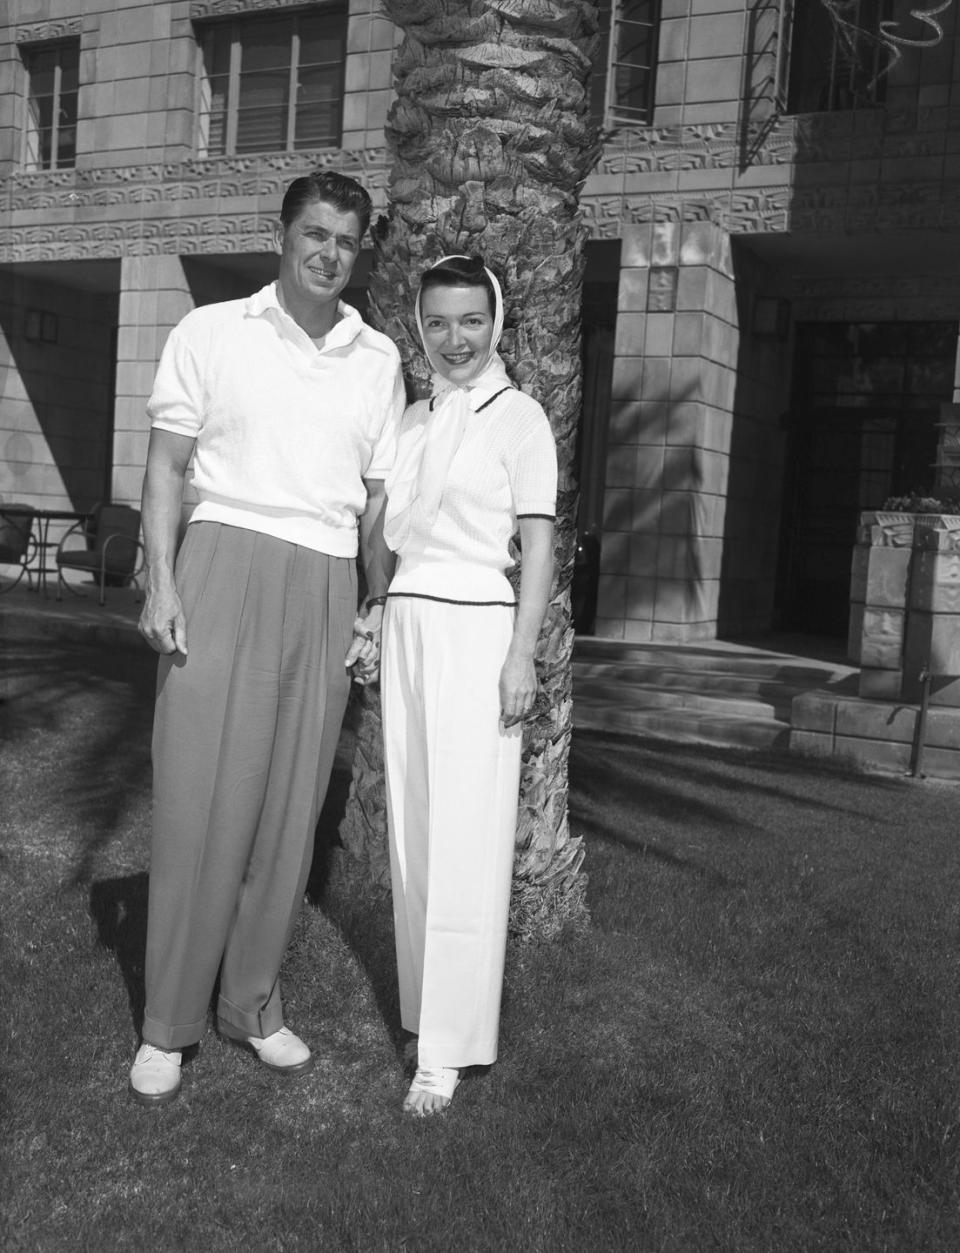 1952: Ronald and Nancy Reagan